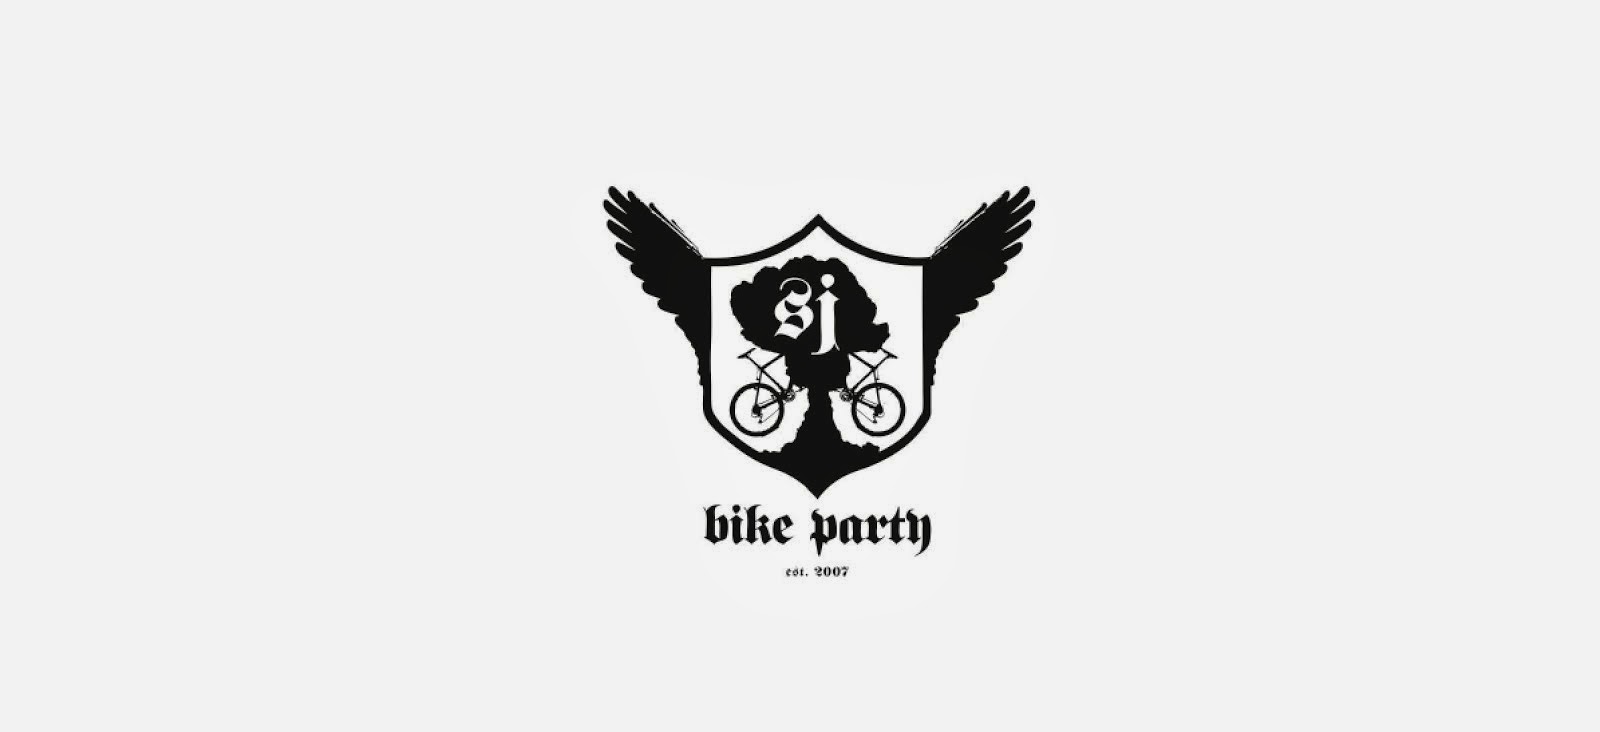 San Jose Bike Party